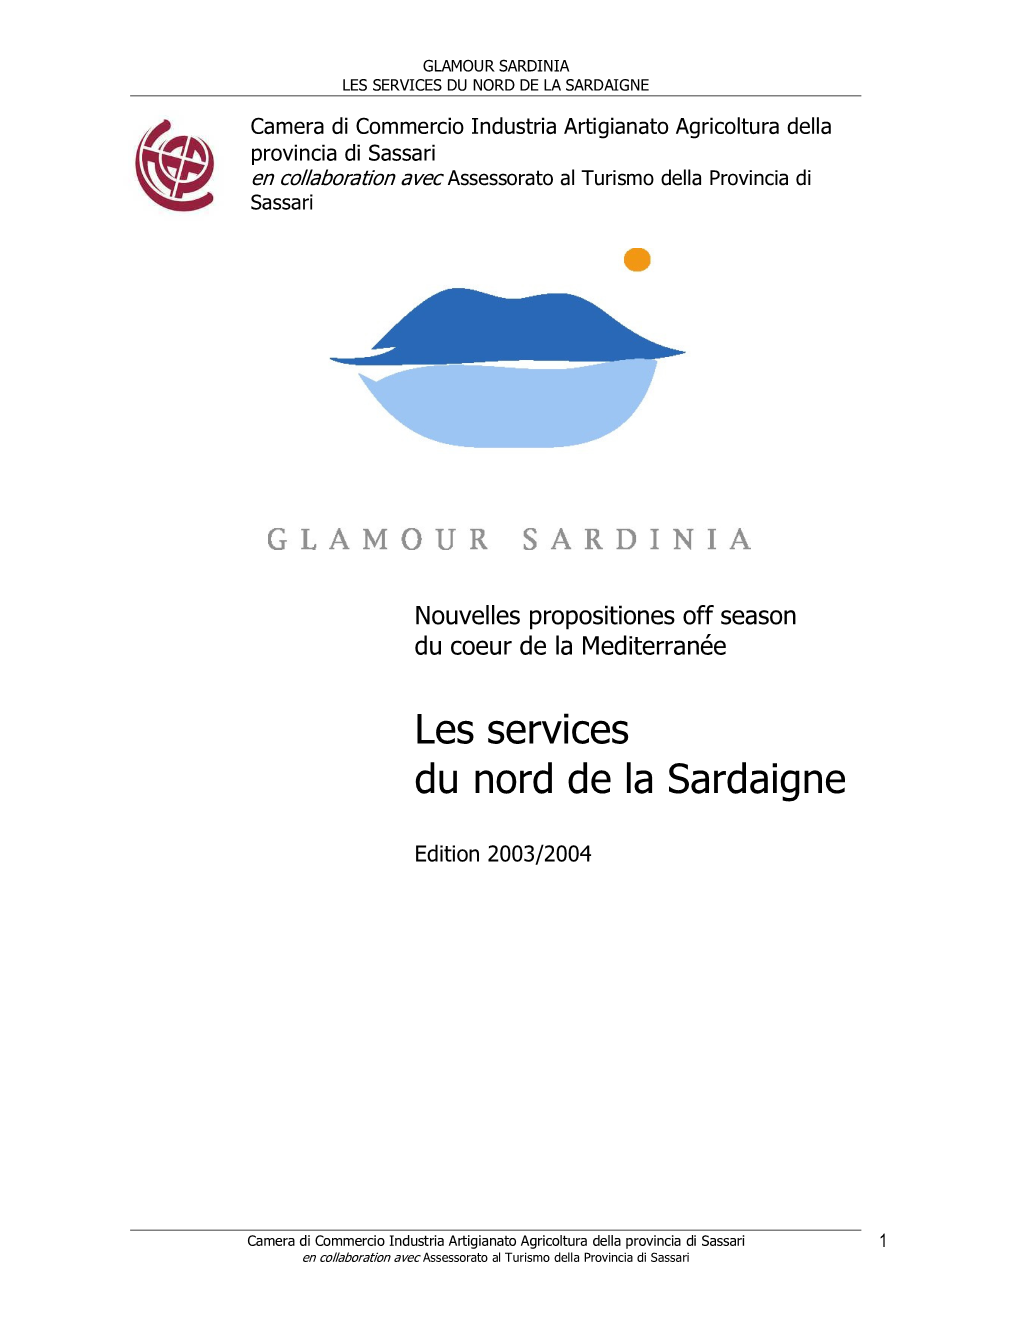 Les Services Du Nord De La Sardaigne